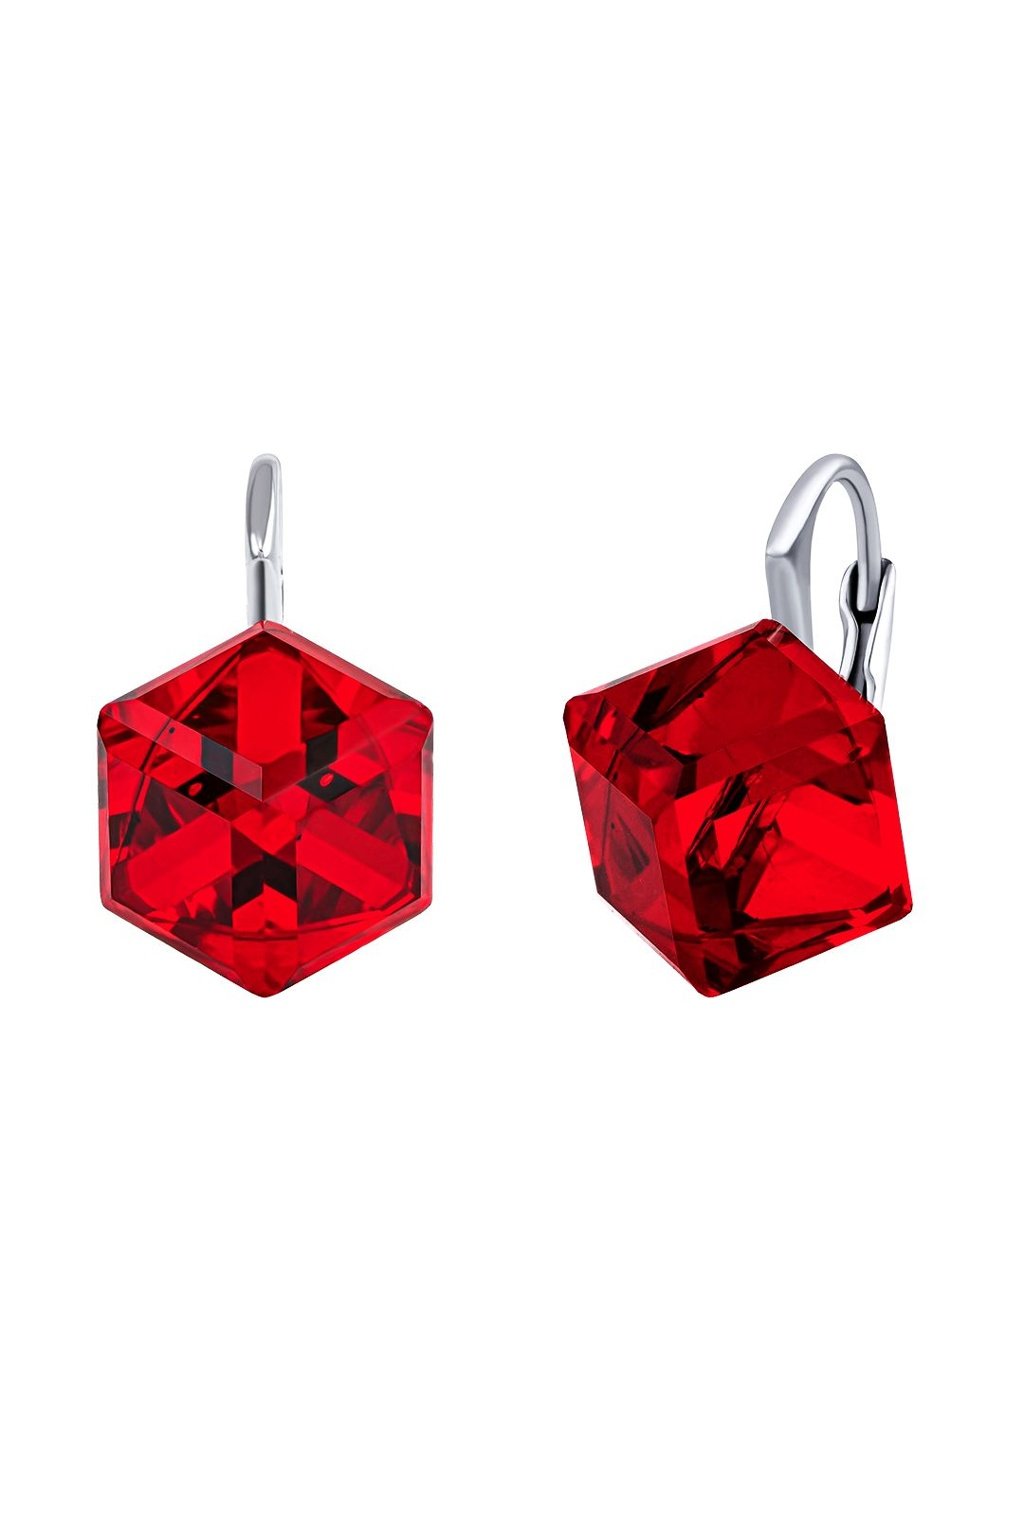 Strieborné náušnice kocky červené s krištáľom Swarovski® Crystals